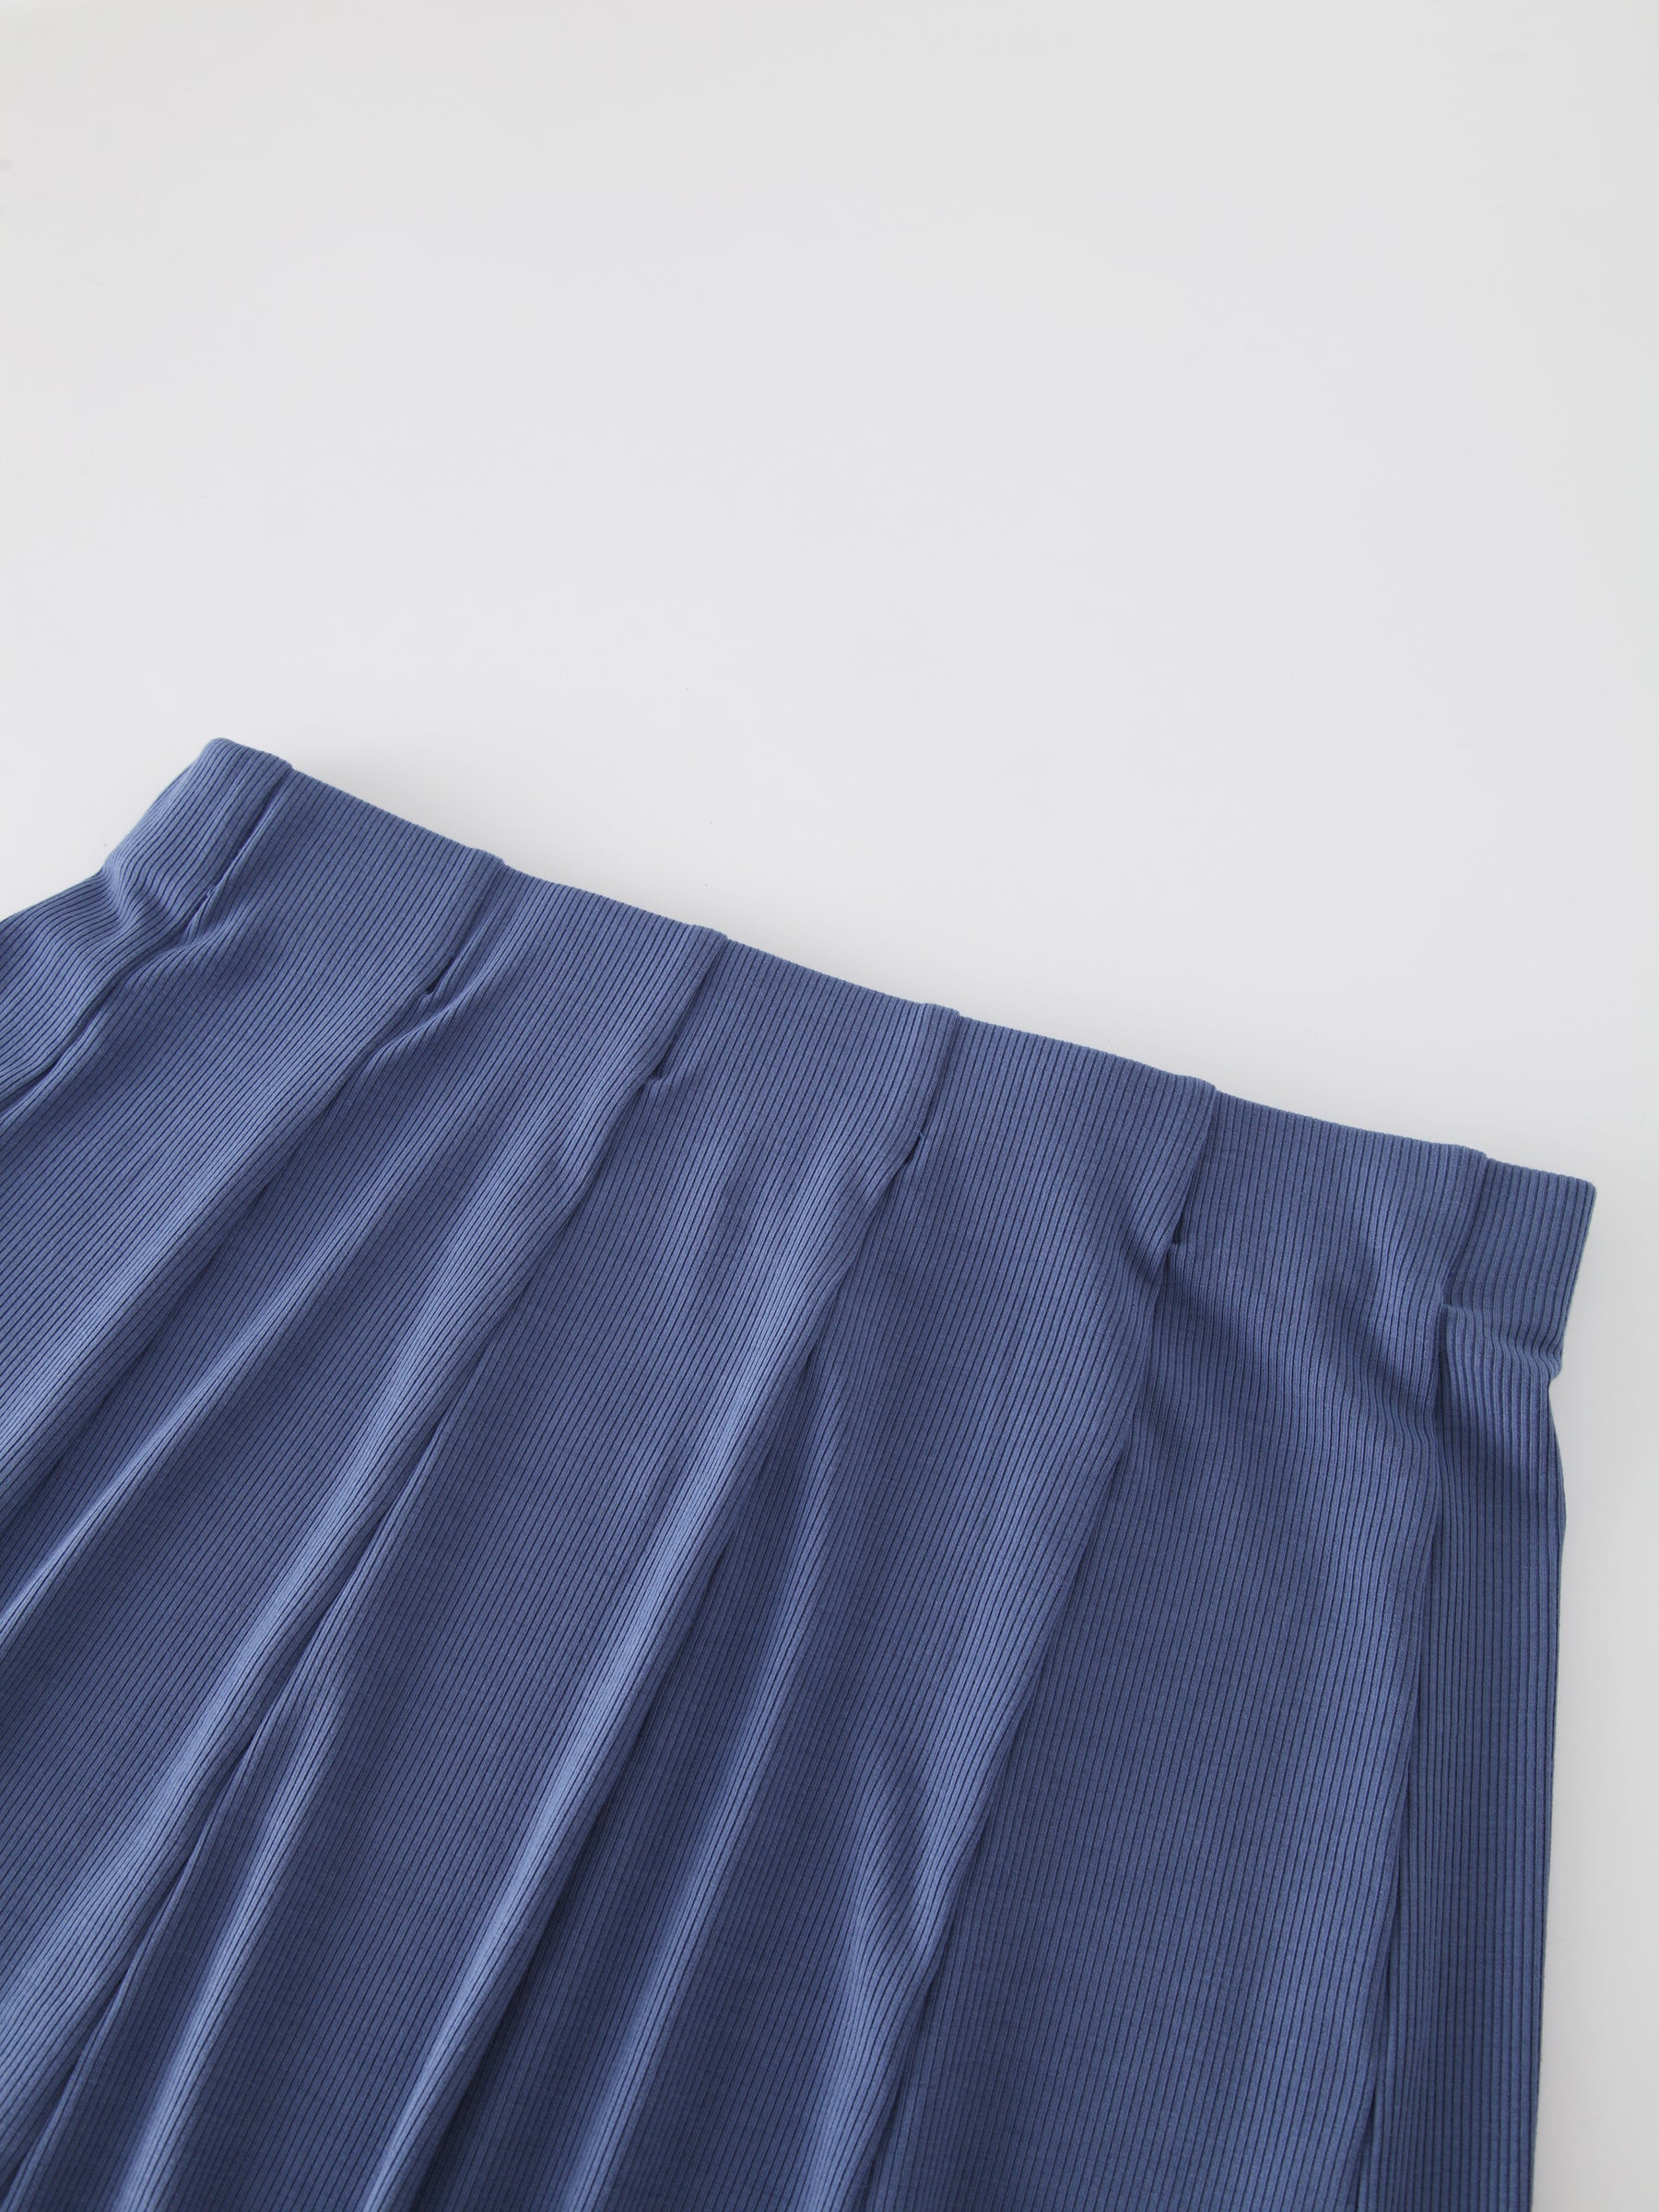 Panel Ribbed Skirt-Denim Blue